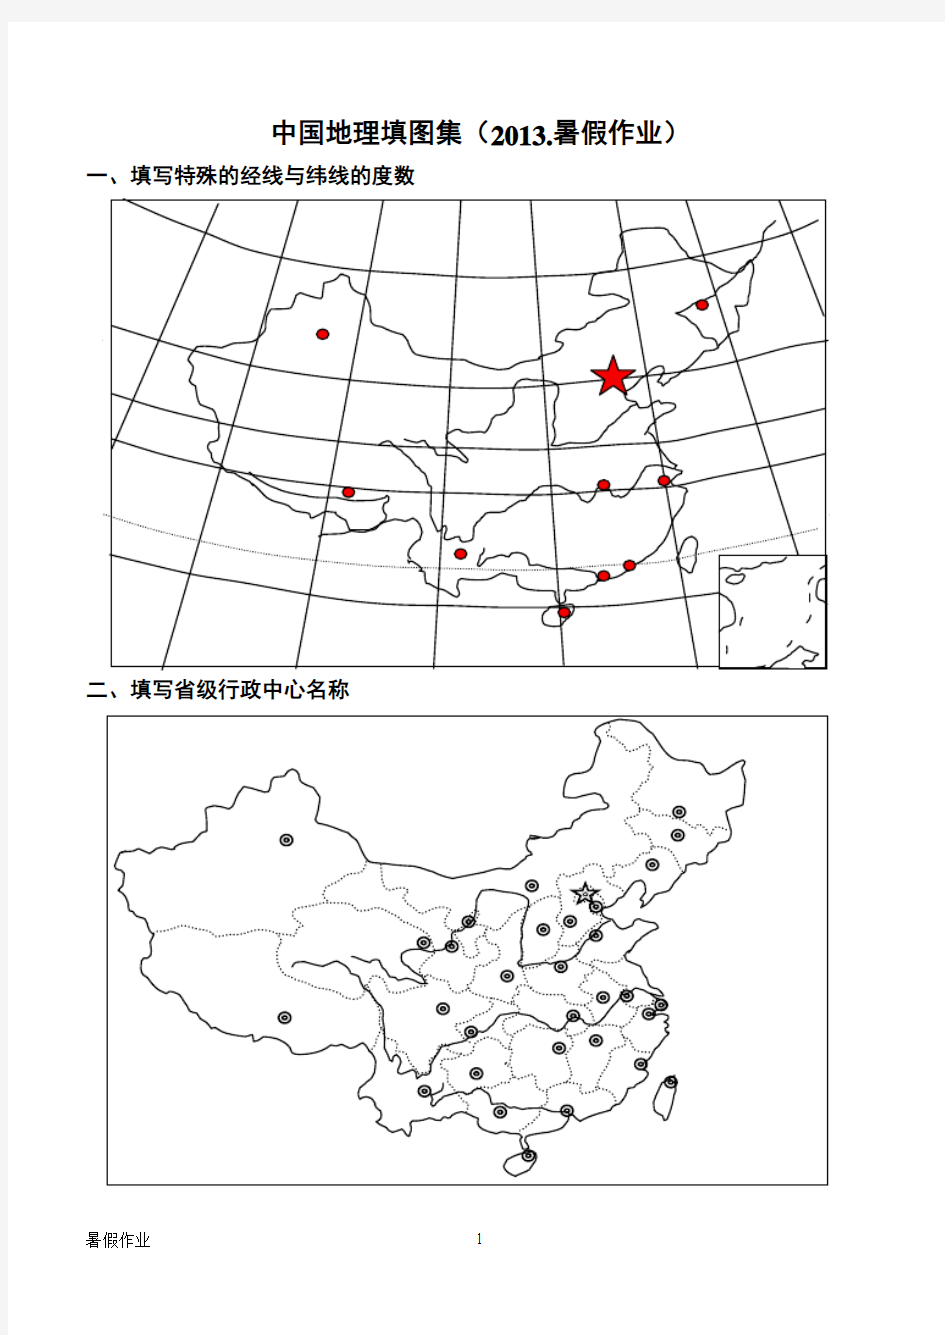 中国和世界地理填图训练合集